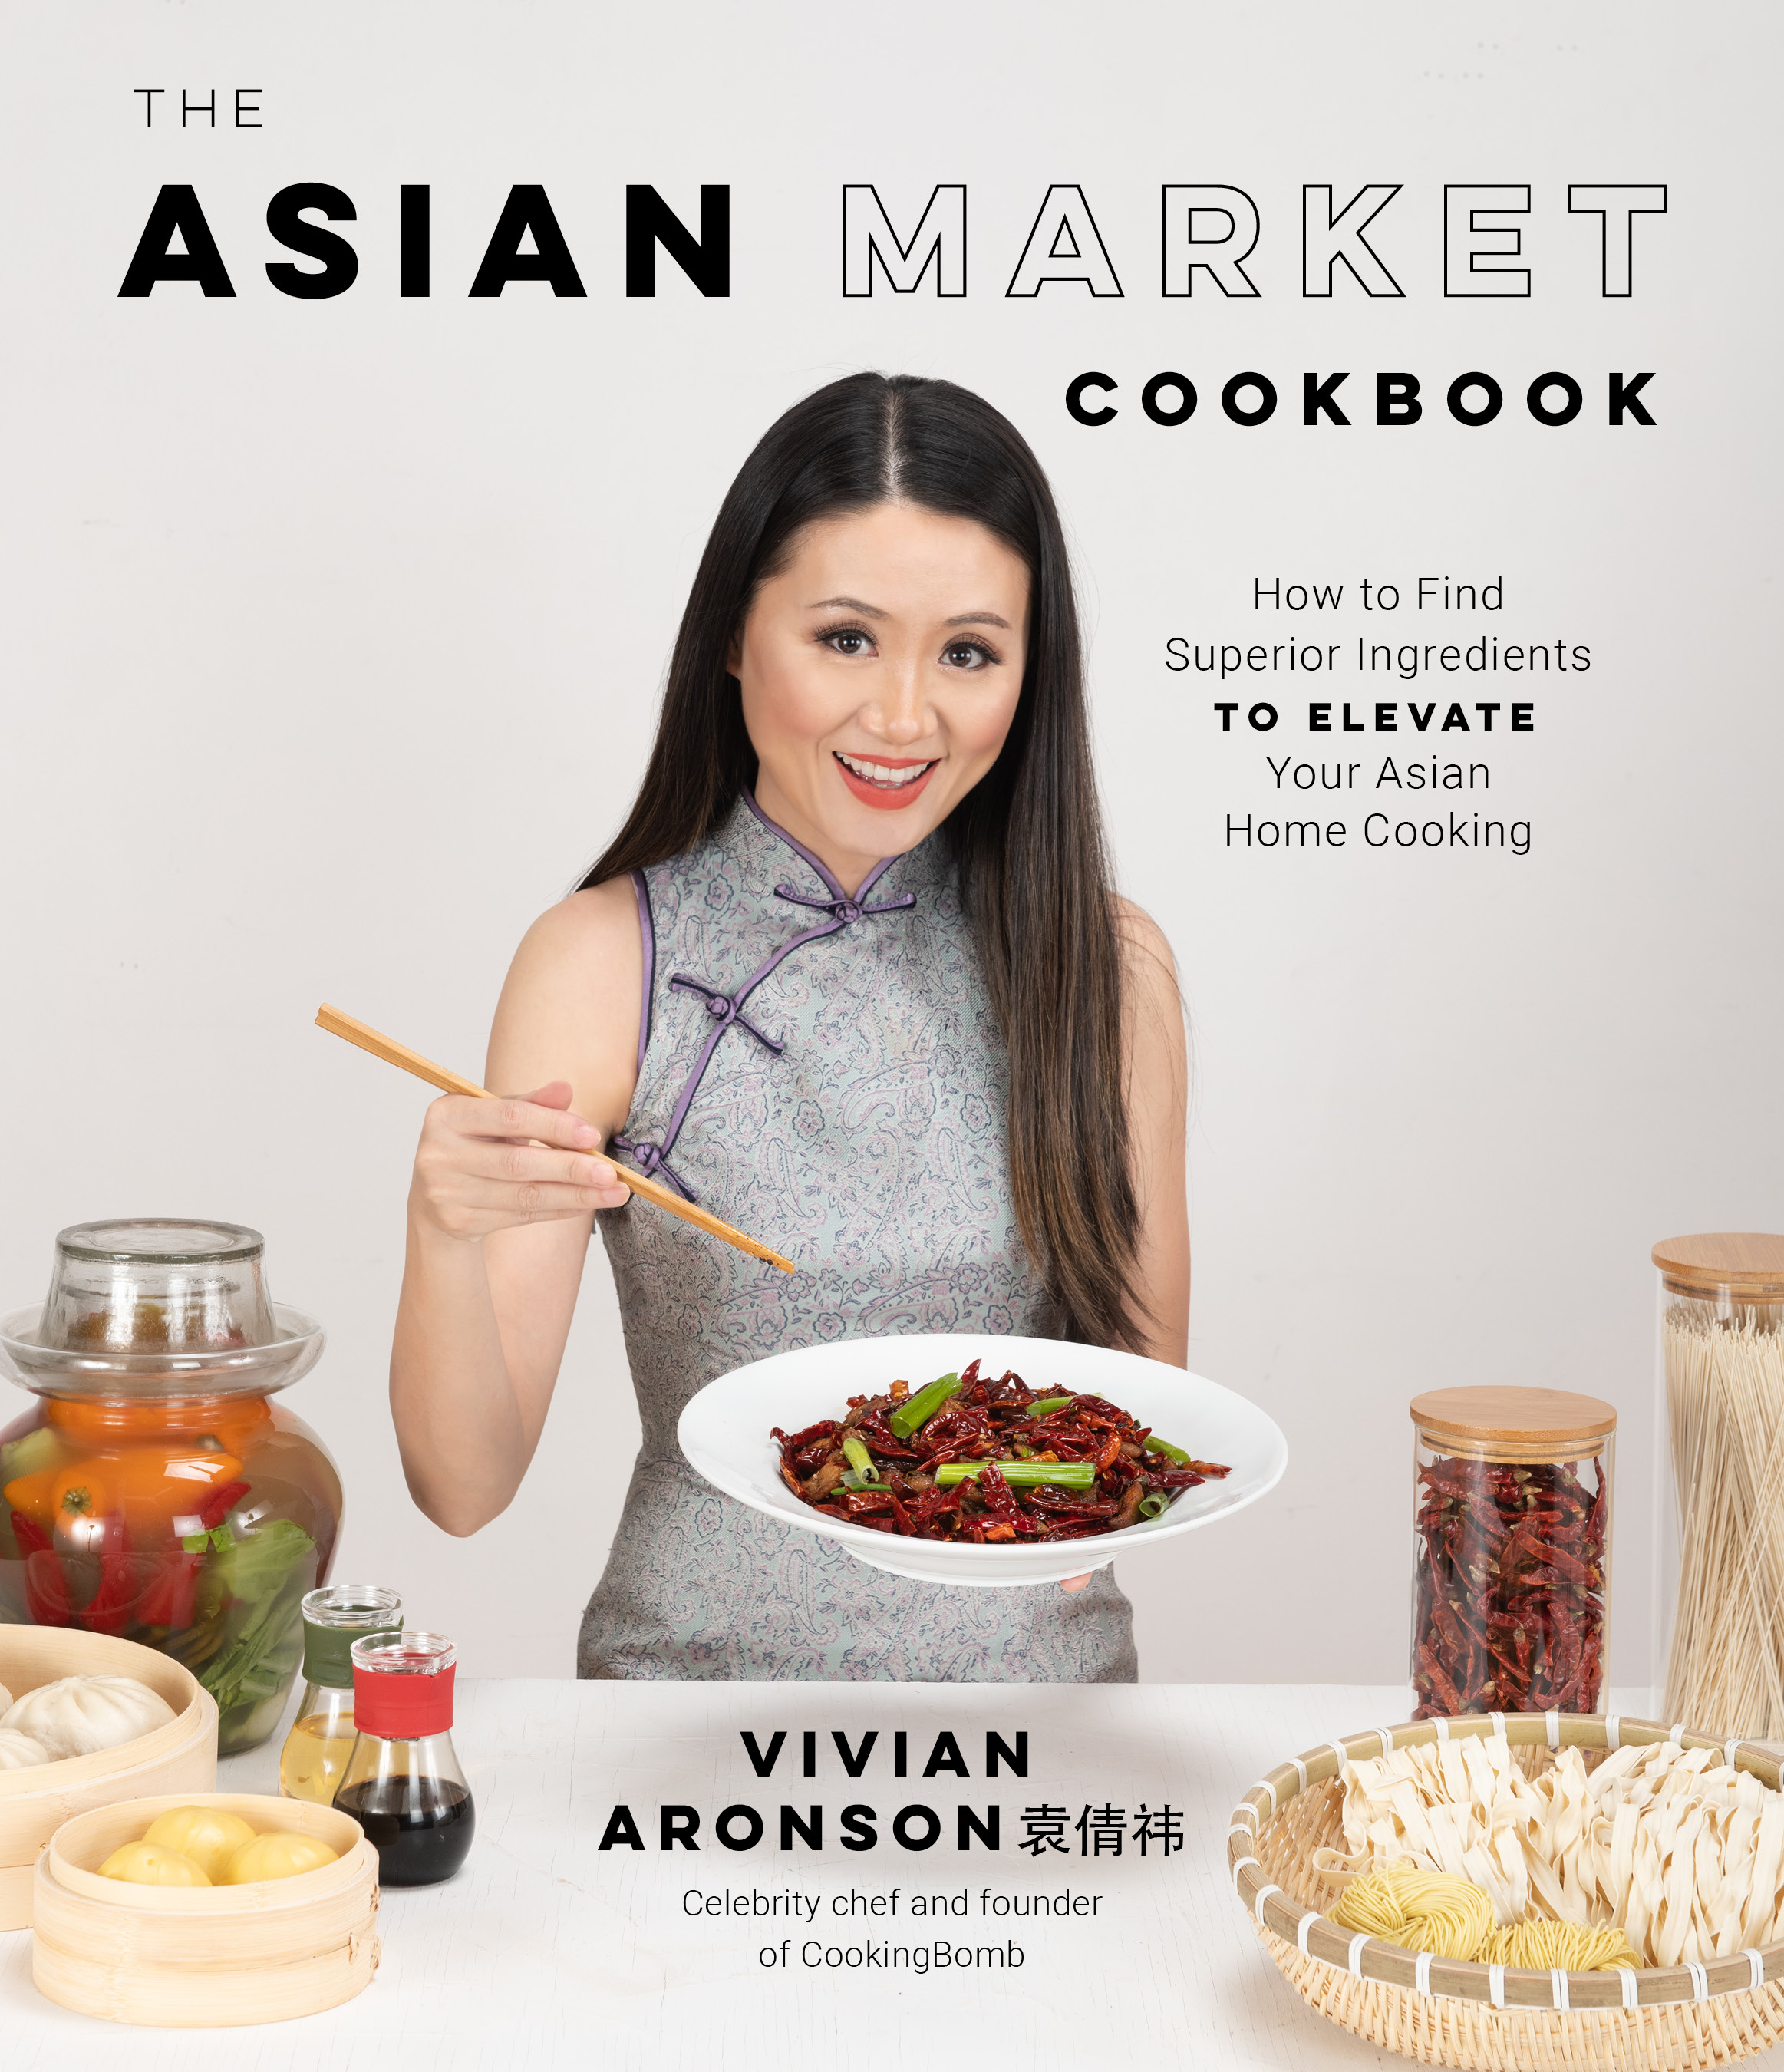 Diverse Cookbooks Create Inclusive Communities